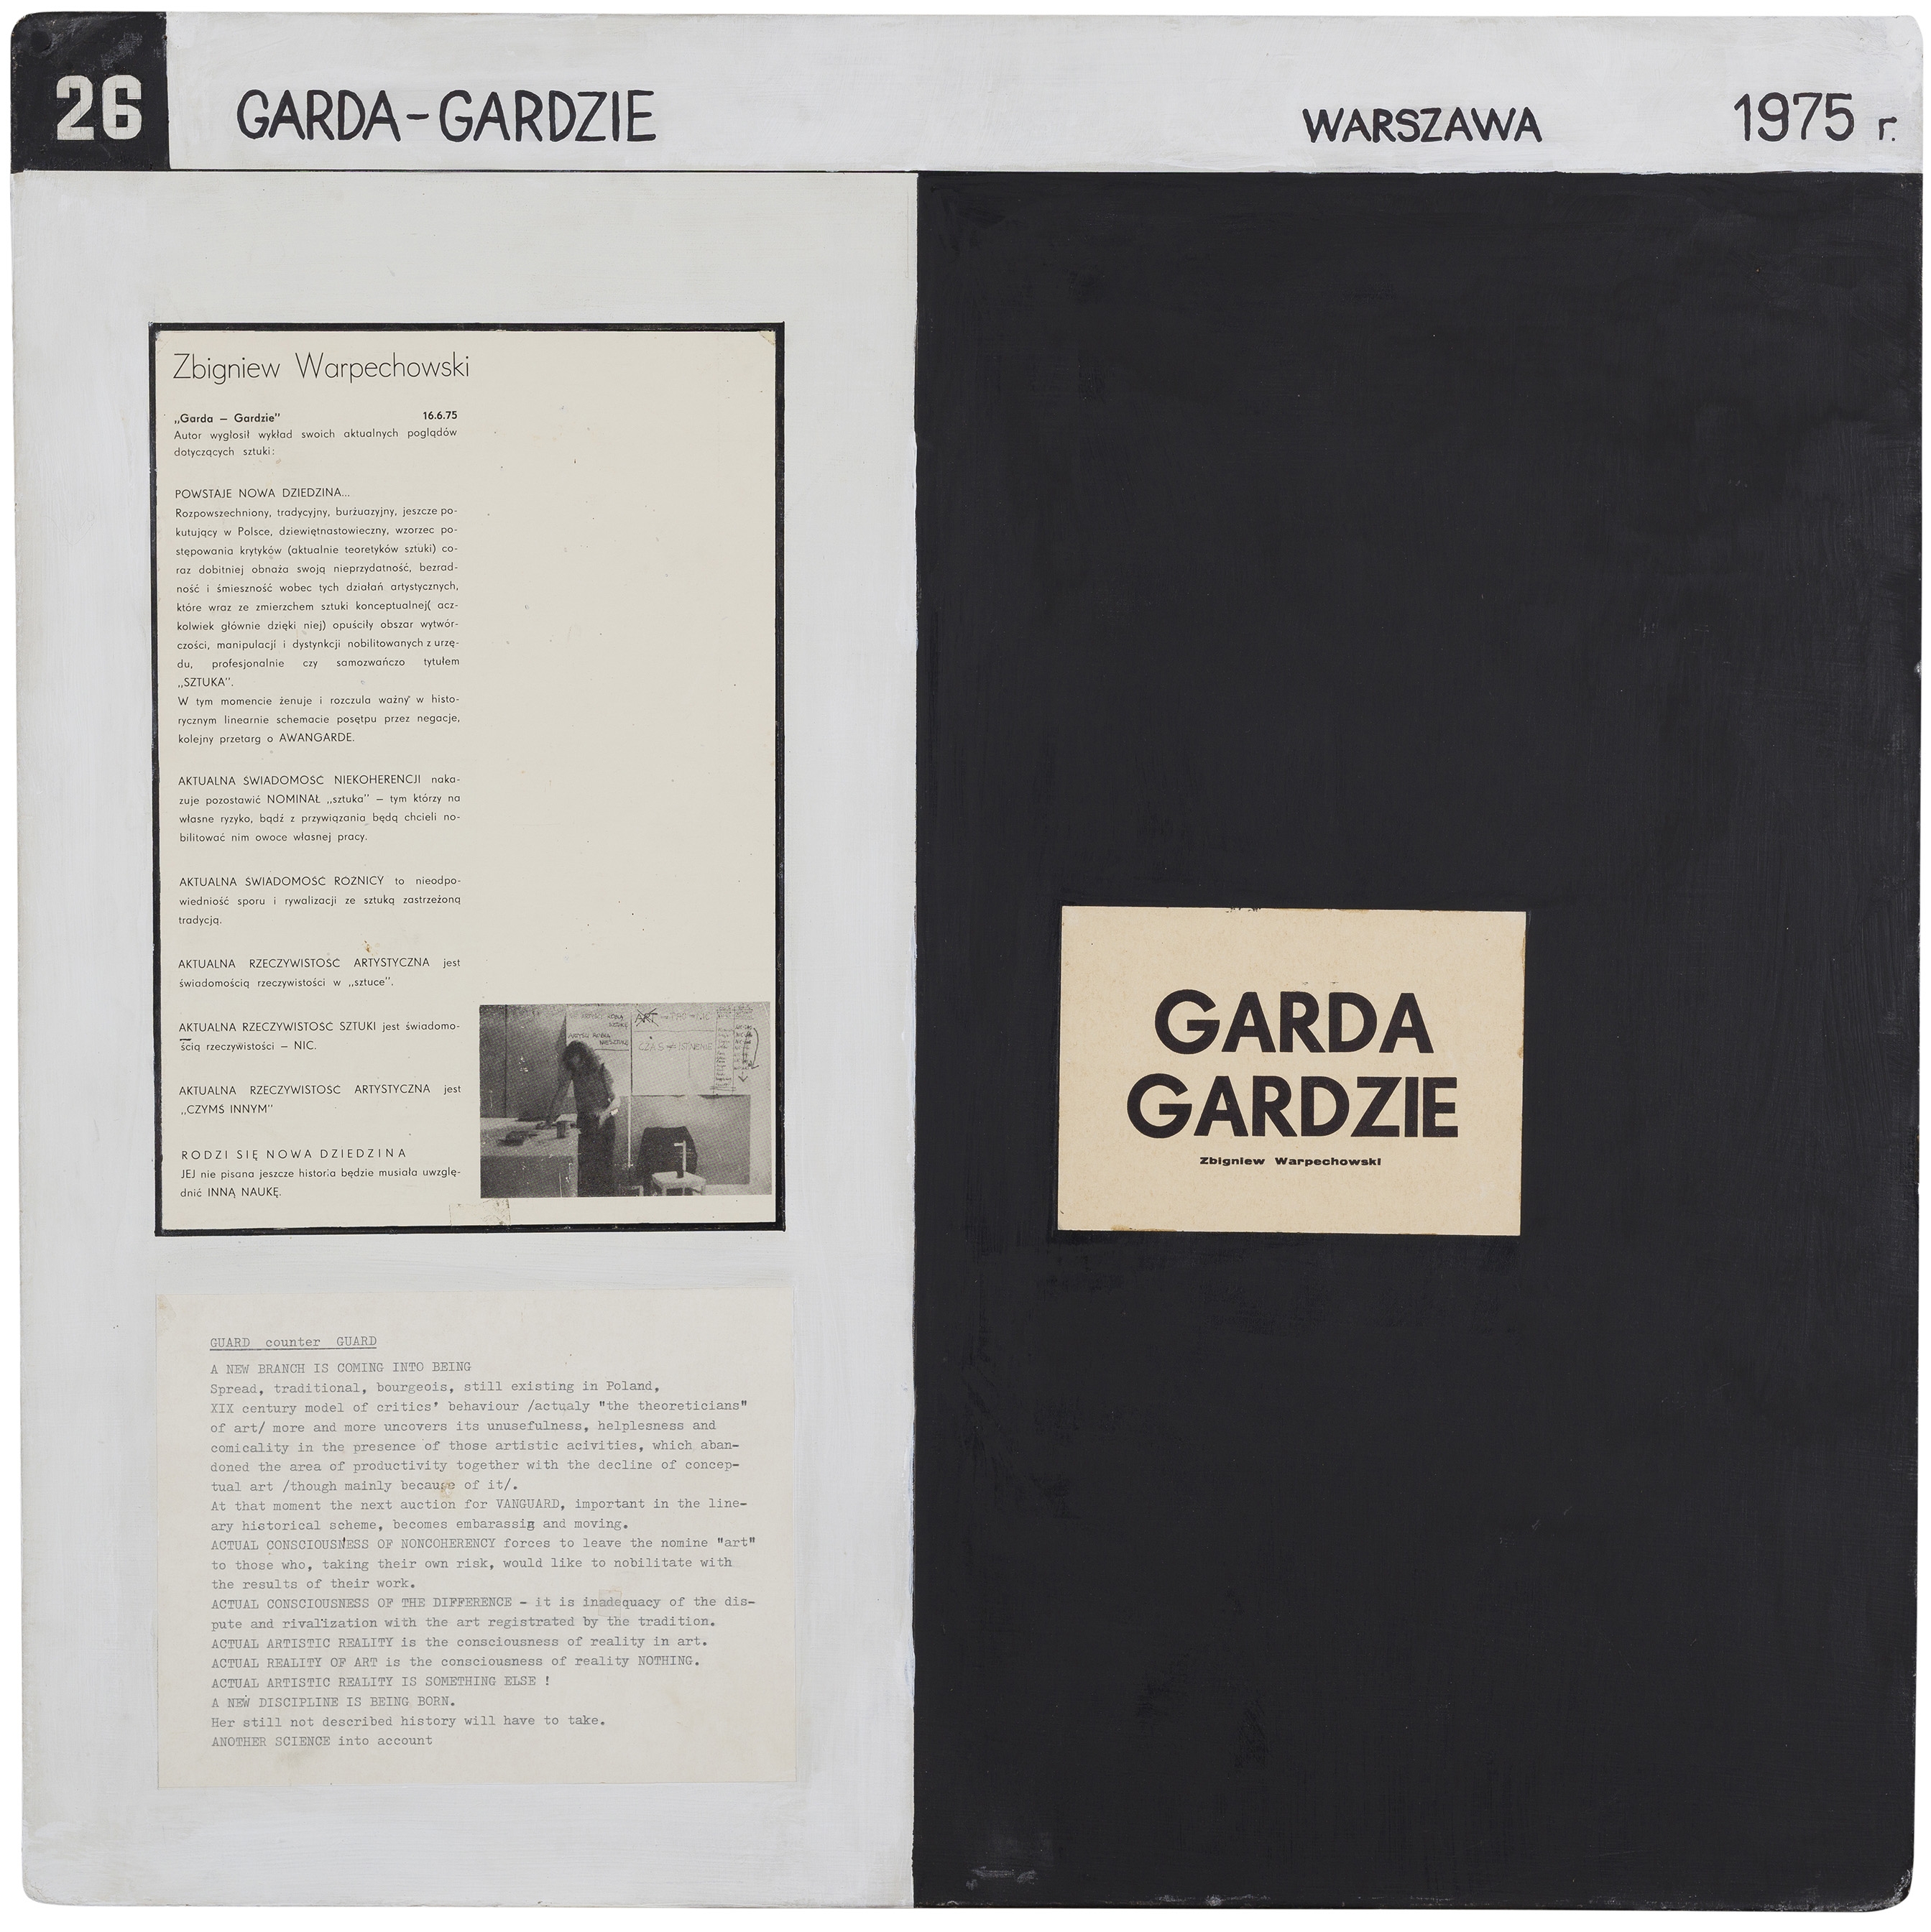 26. GARDA-GARDZIE, Warszawa, 1975 